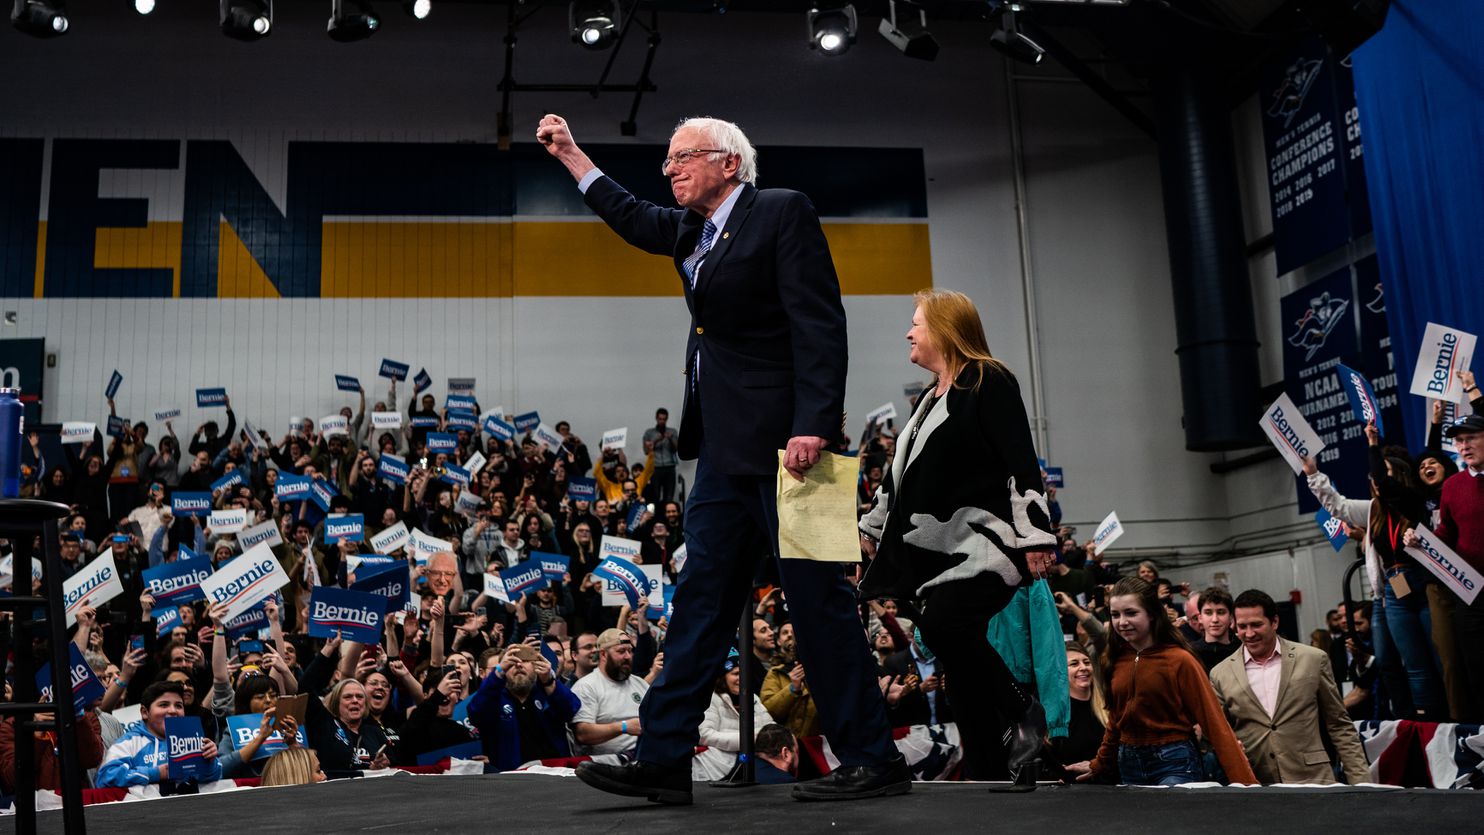 A Minnesota district illustrates a Bernie Sanders weakness